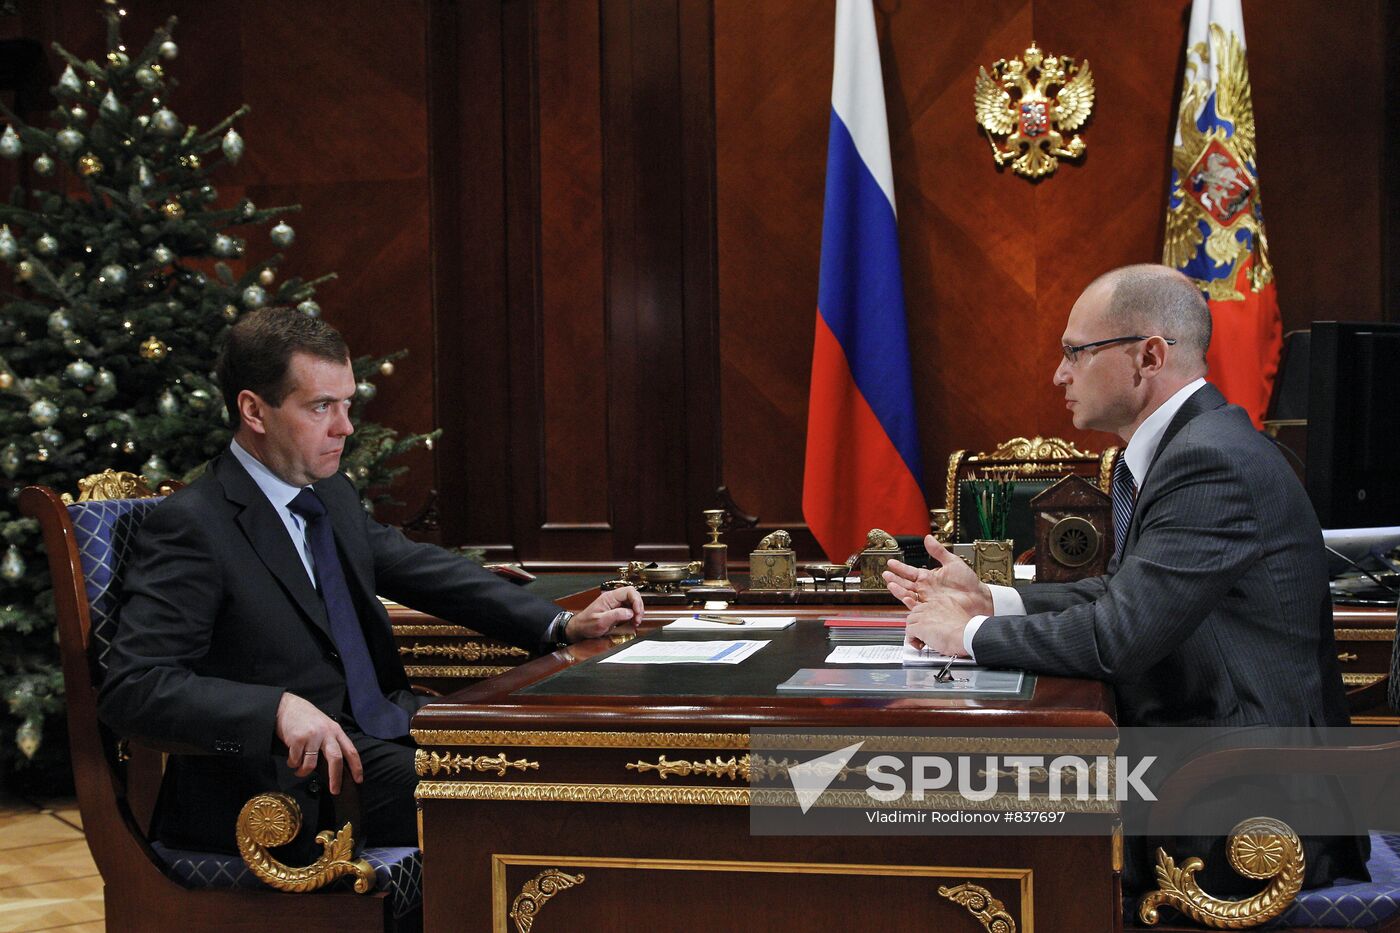 Dmitry Medvedev and Sergei Kiriyenko